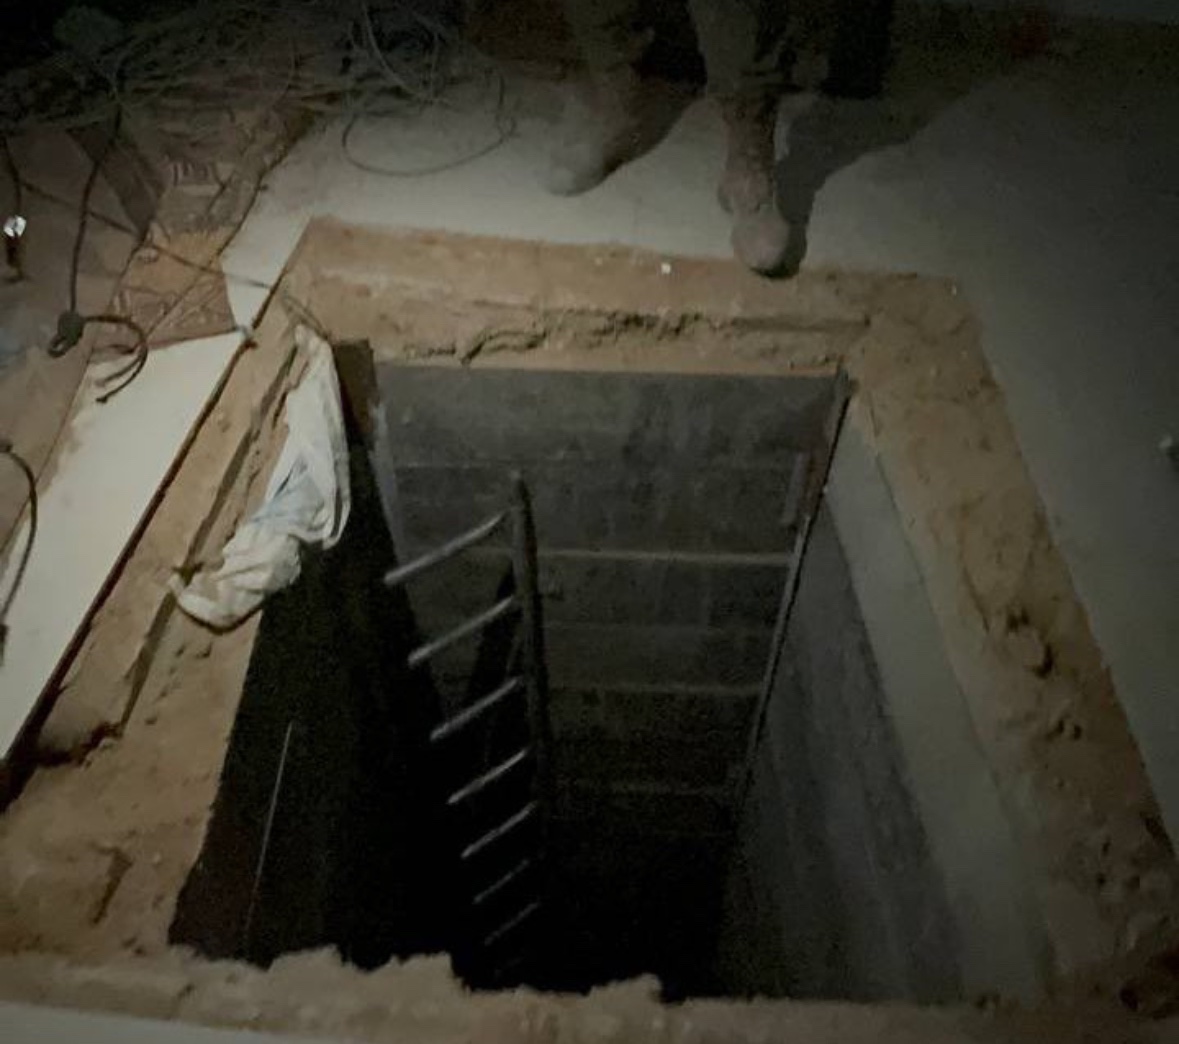 Le tunnel dans lequel a être retrouvé le corps de Shani Louk se trouve dans un bâtiment de l'ONU. Je répète : Le tunnel dans lequel a être retrouvé le corps de Shani Louk se trouve dans un bâtiment de l'ONU ! @ONU_fr